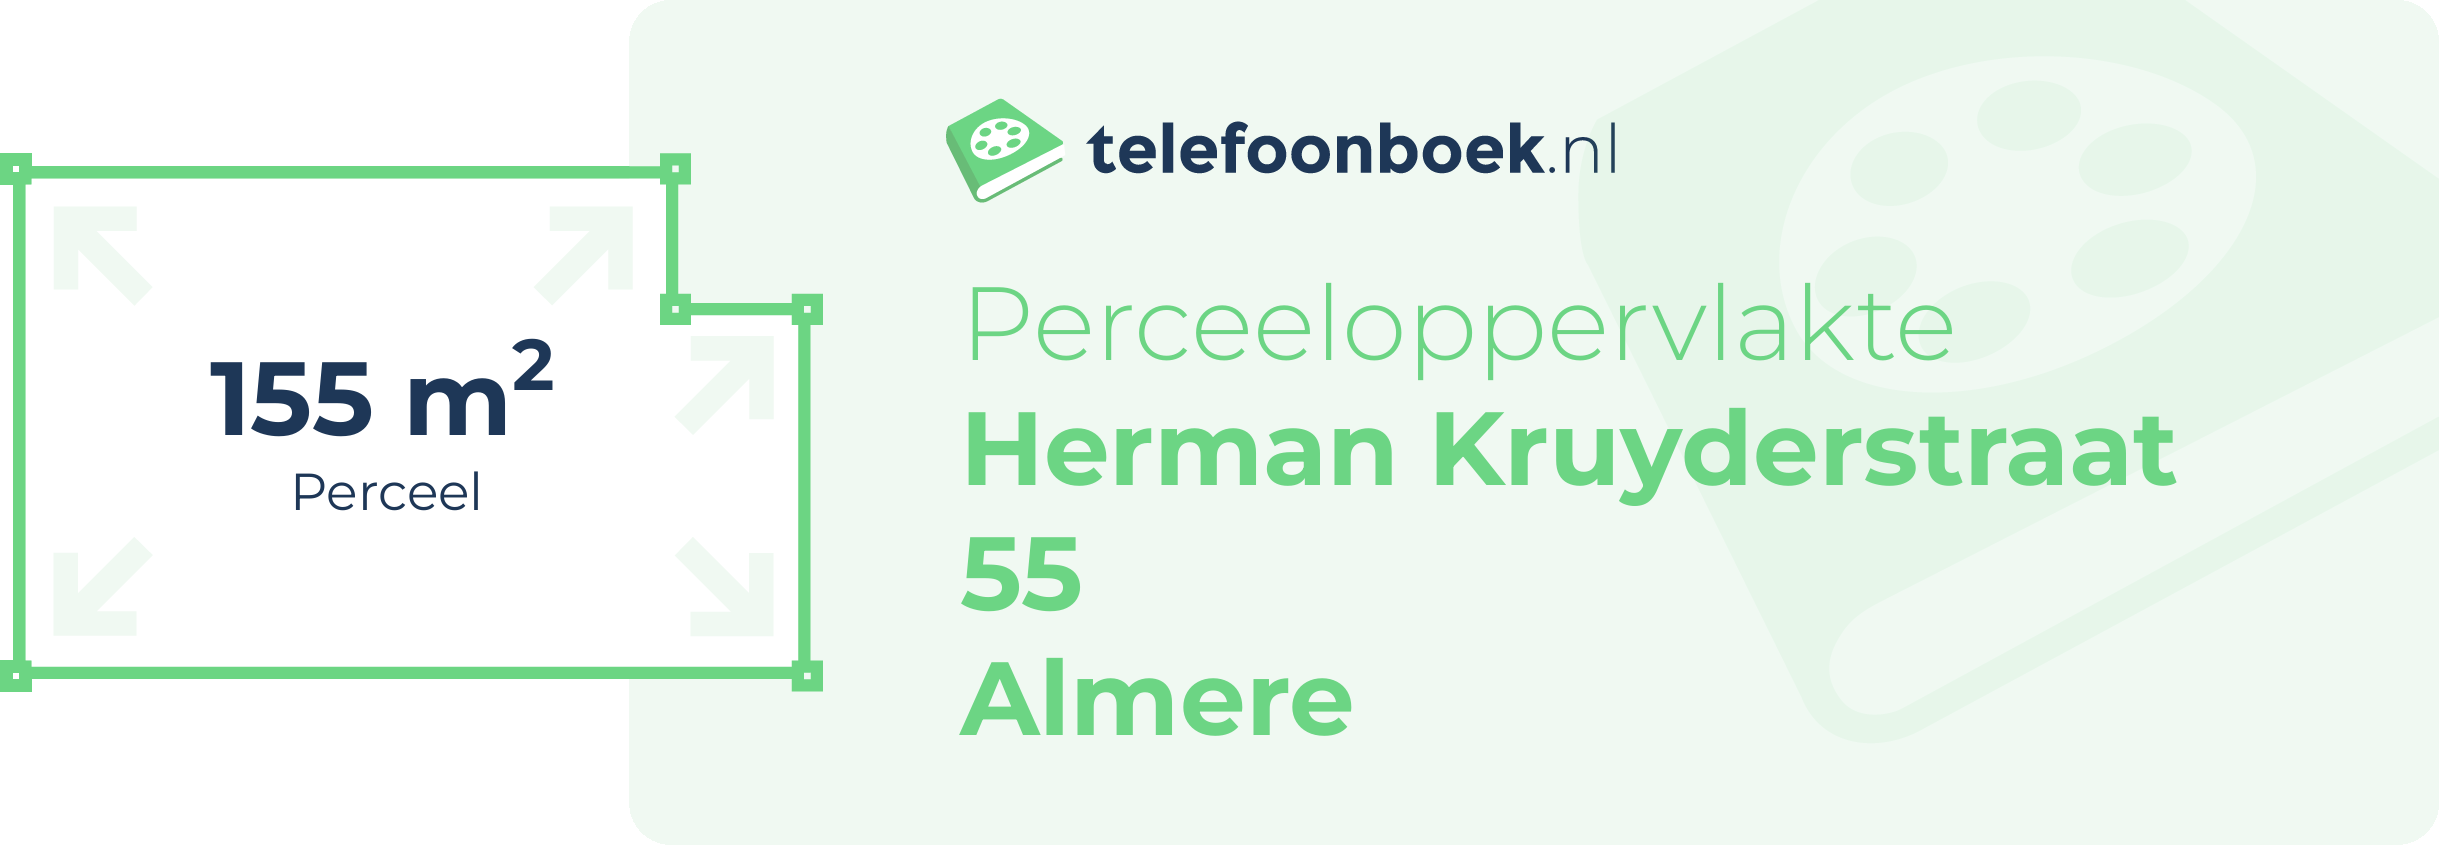 Perceeloppervlakte Herman Kruyderstraat 55 Almere